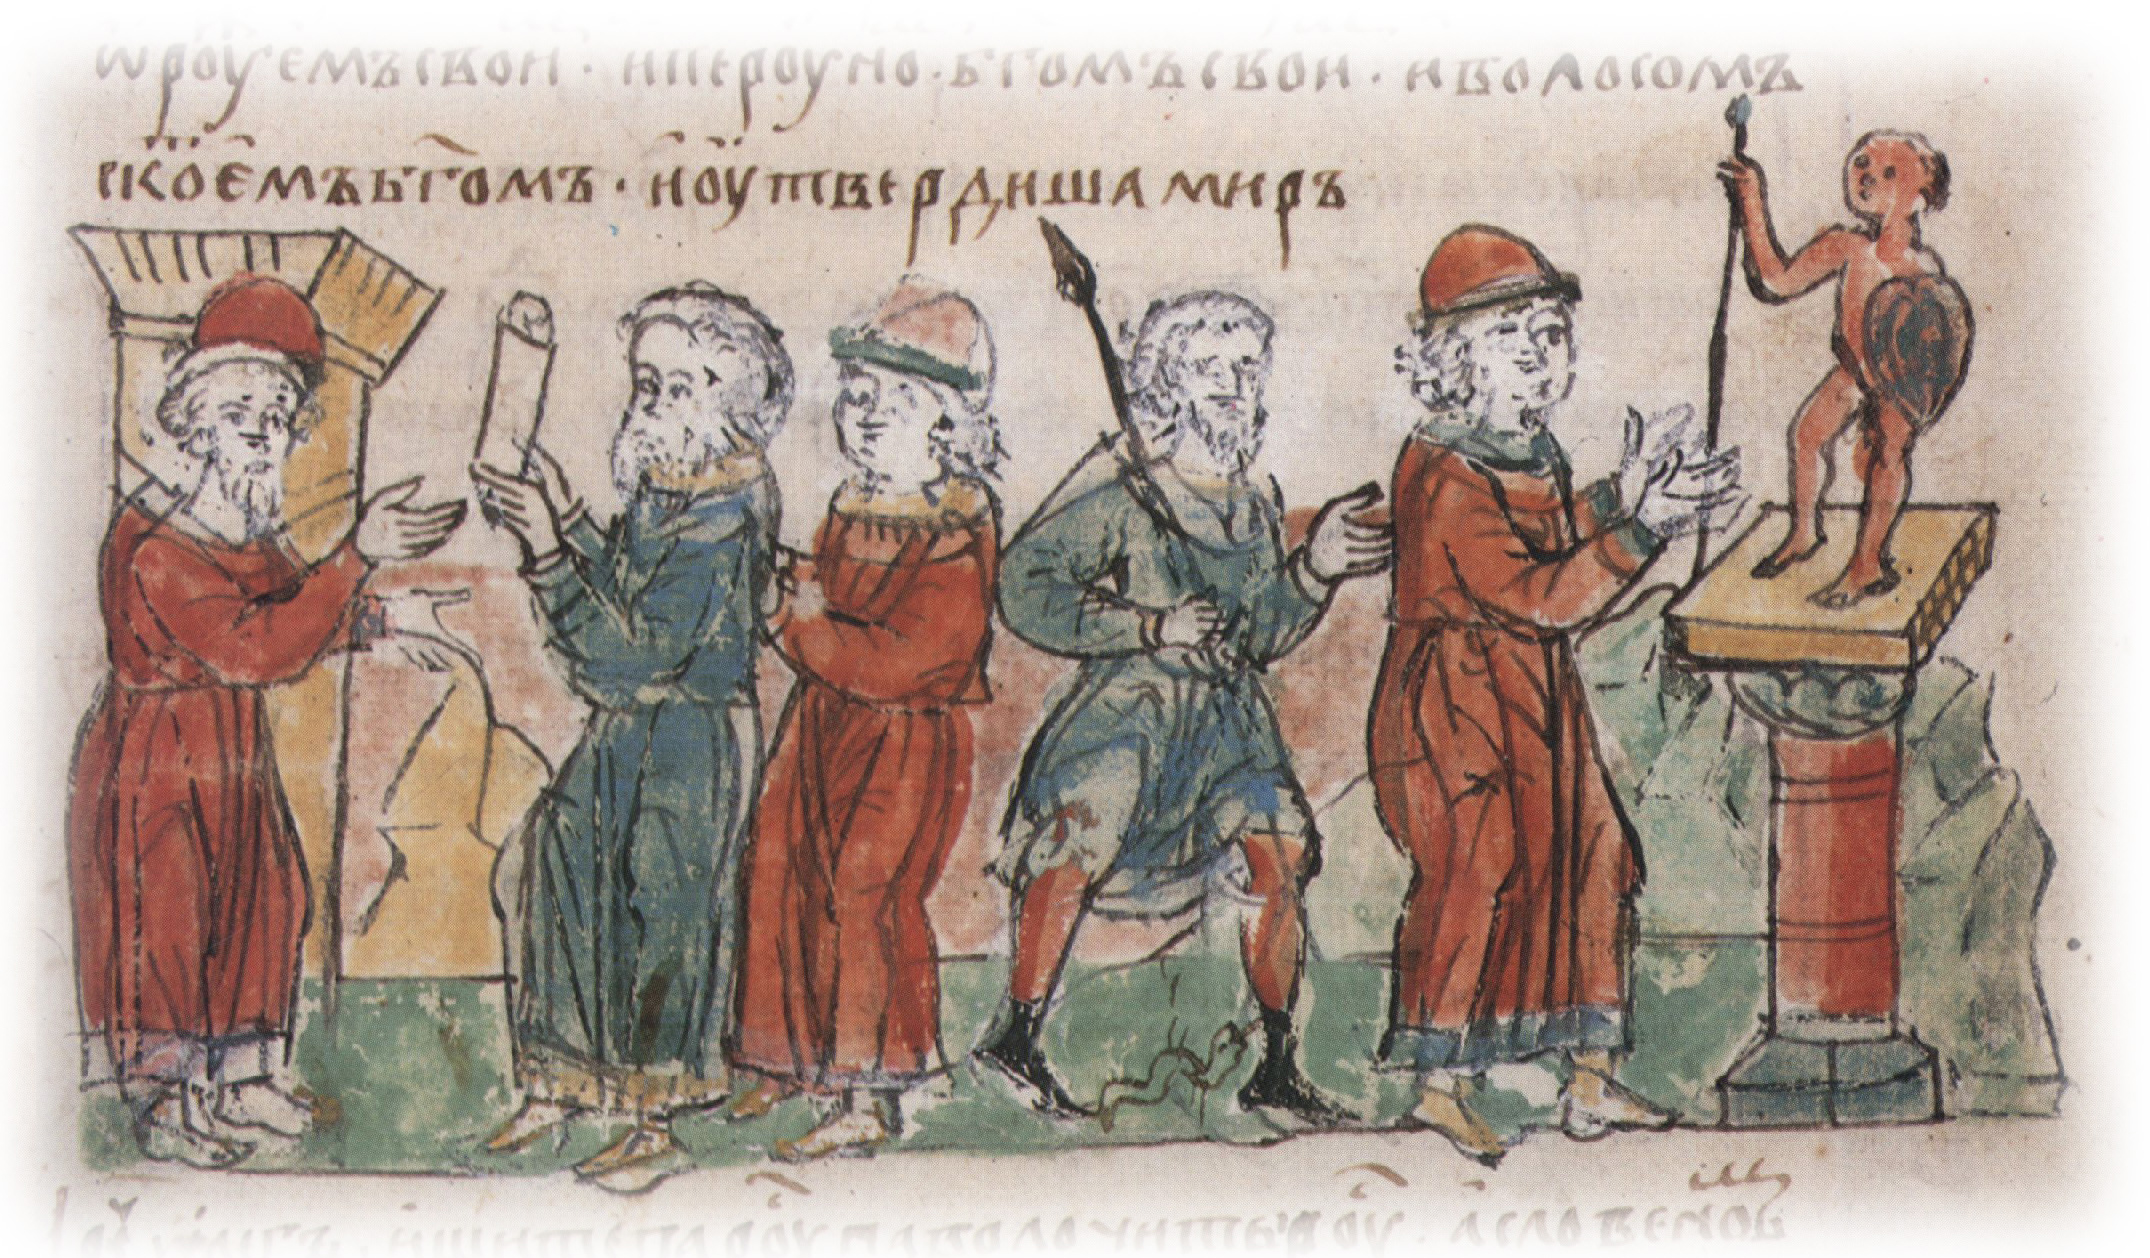 Присяга воинов Олега оружием и богом Перуном; утверждение мирною договора Олега с греками.